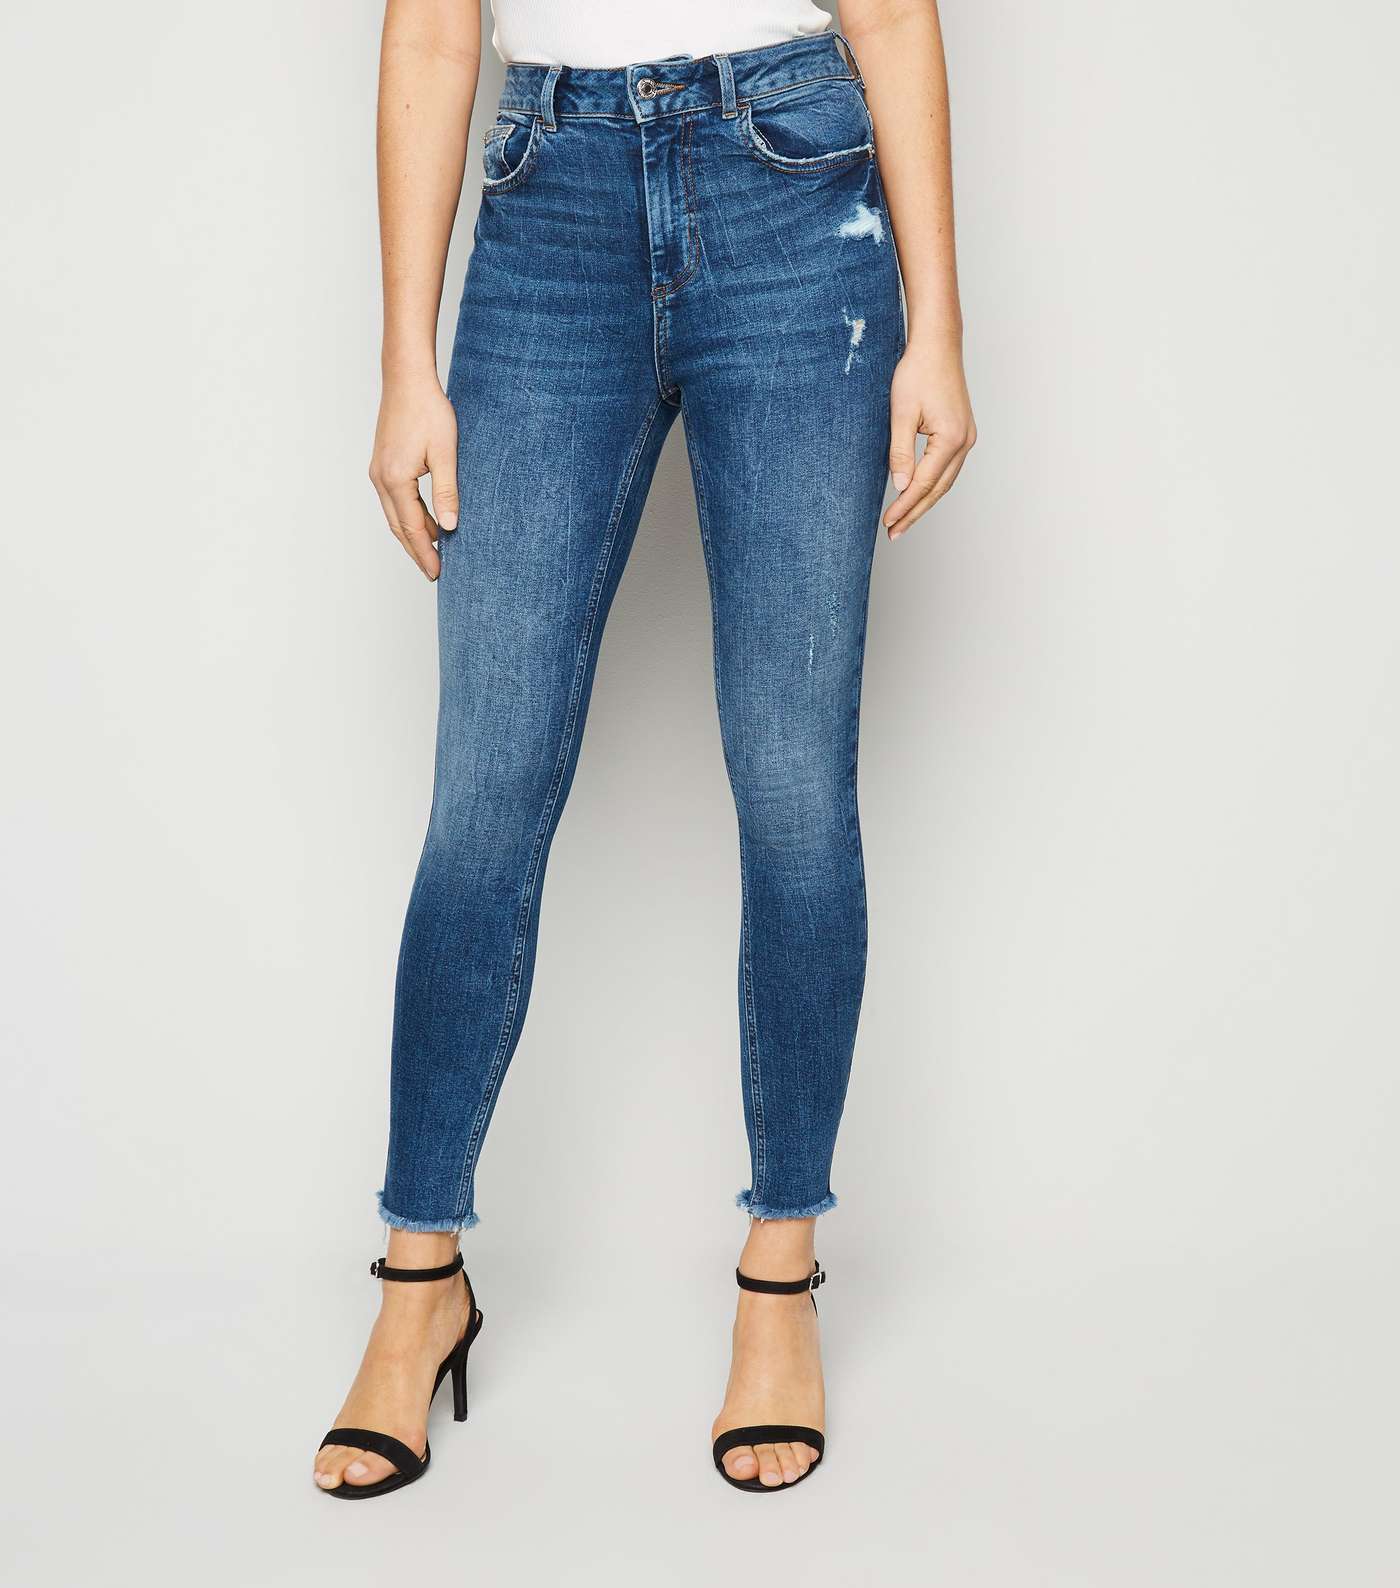 Blue Frayed Hem Mid Rise Super Skinny Jeans Image 2